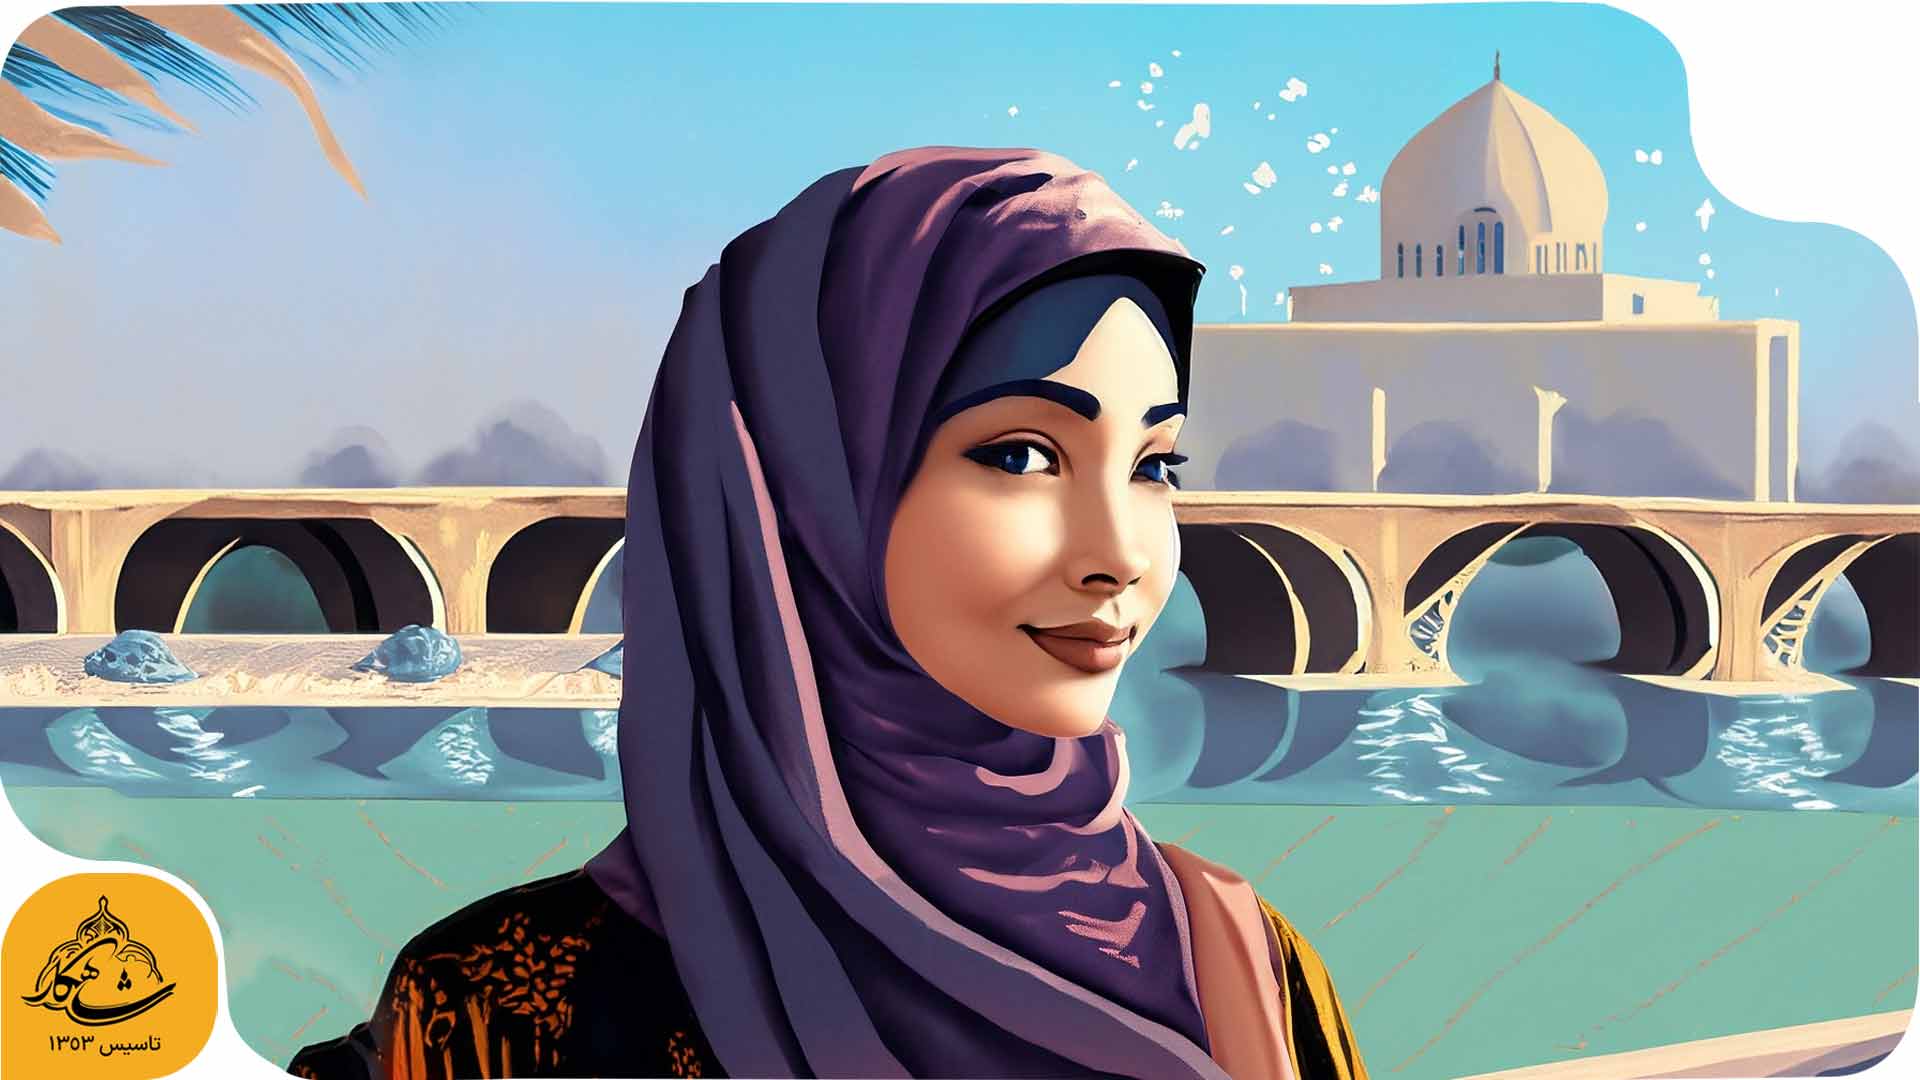 یک دختر اصفهانی در سال 2070 با هوش مصنوعی اصفهان